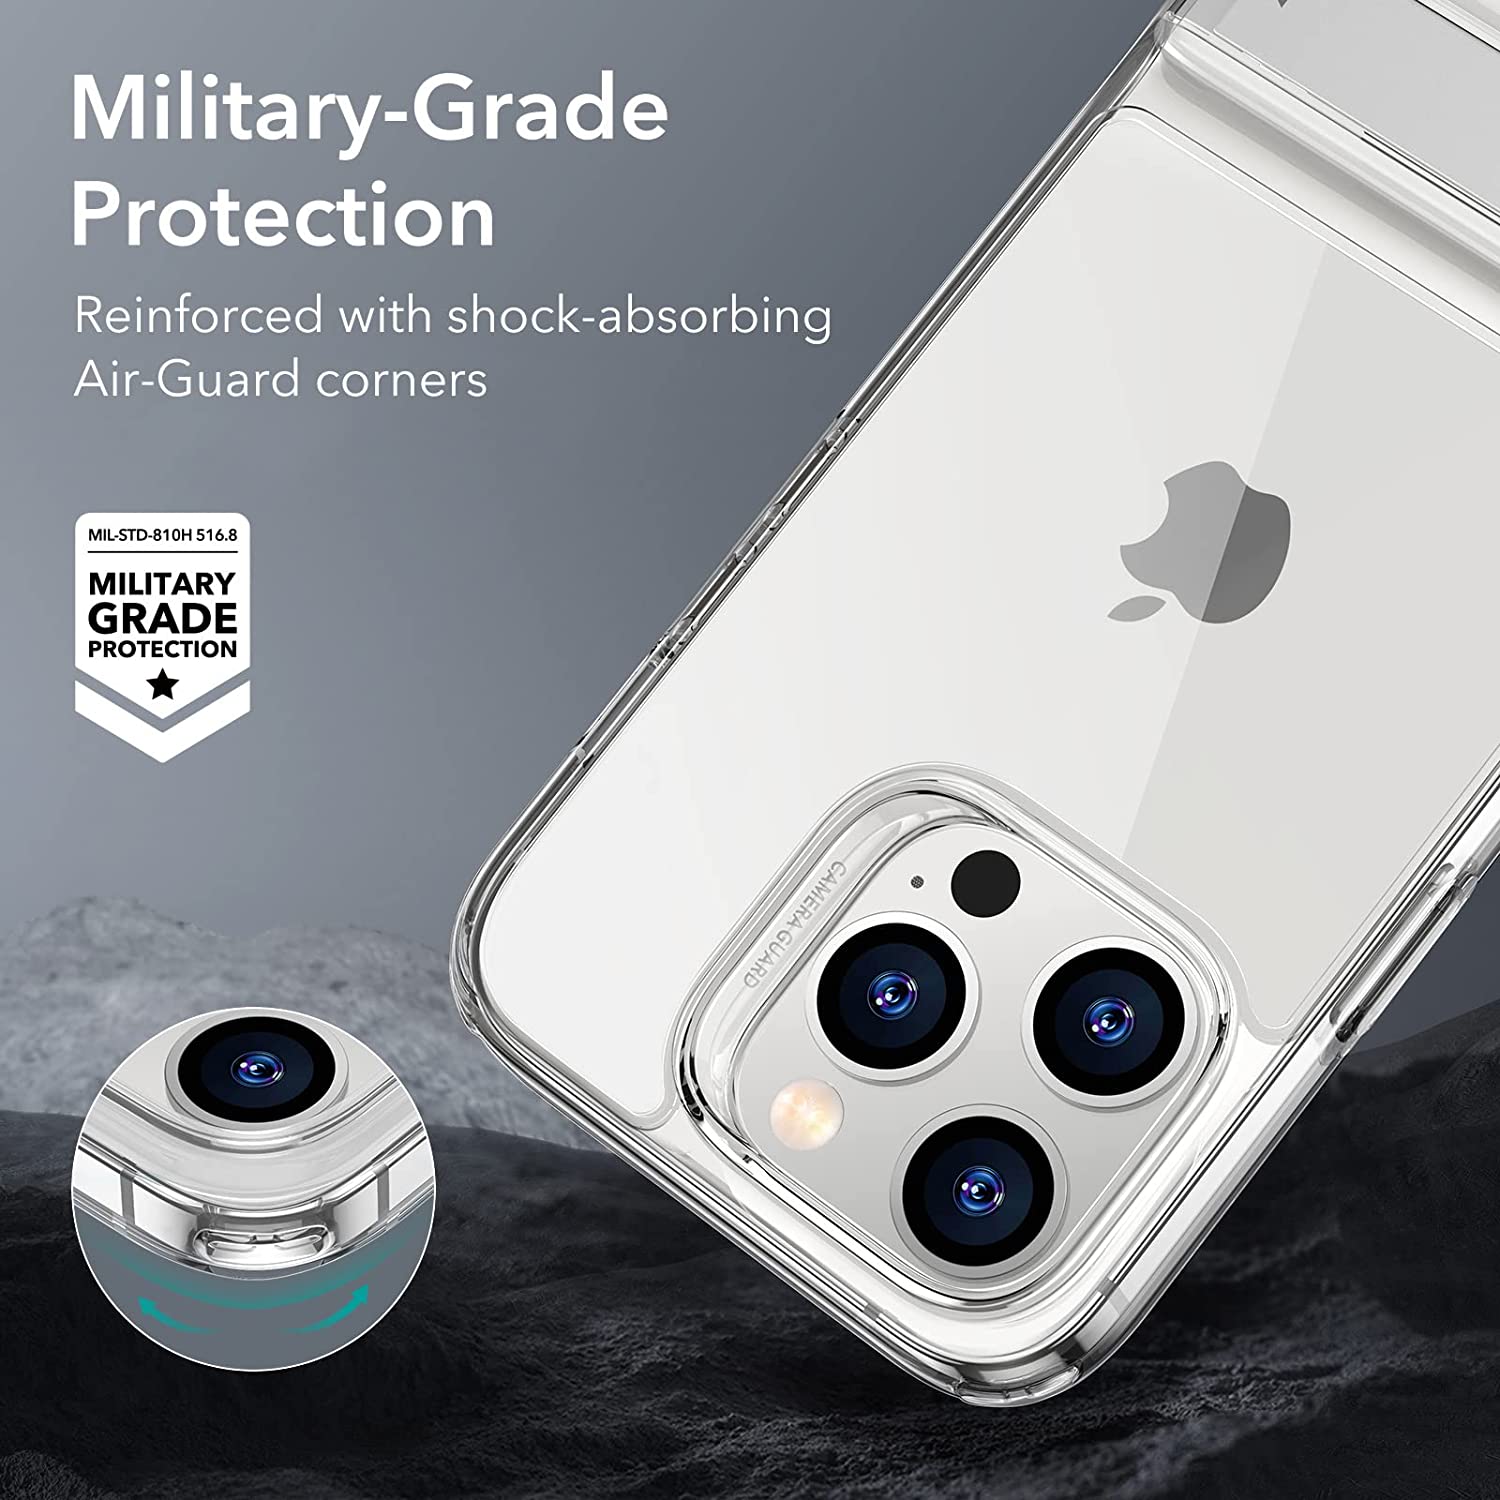 Ốp Lưng cho iPhone 14 Pro / iPhone 14 Pro Max ESR Metal Kickstand Phone Case - Hàng Chính Hãng